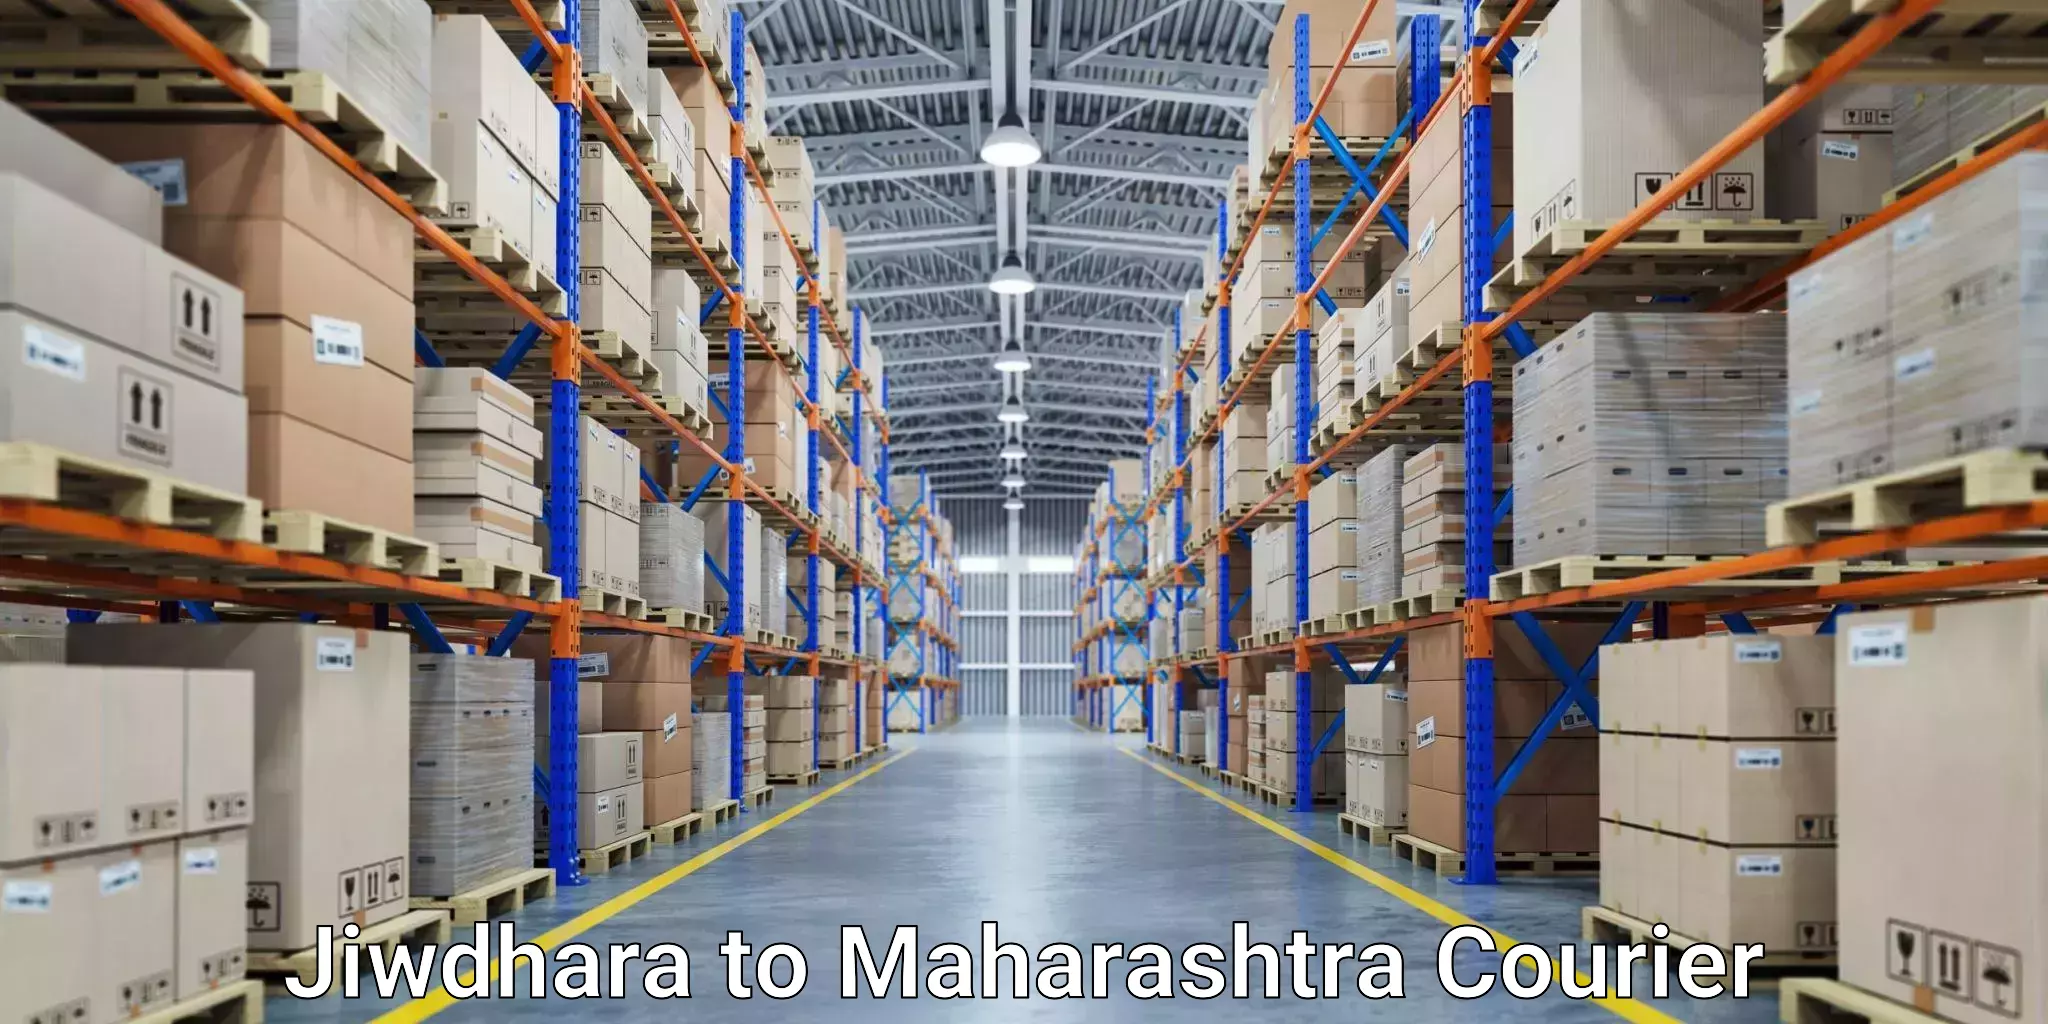 Ocean freight courier Jiwdhara to Lanja